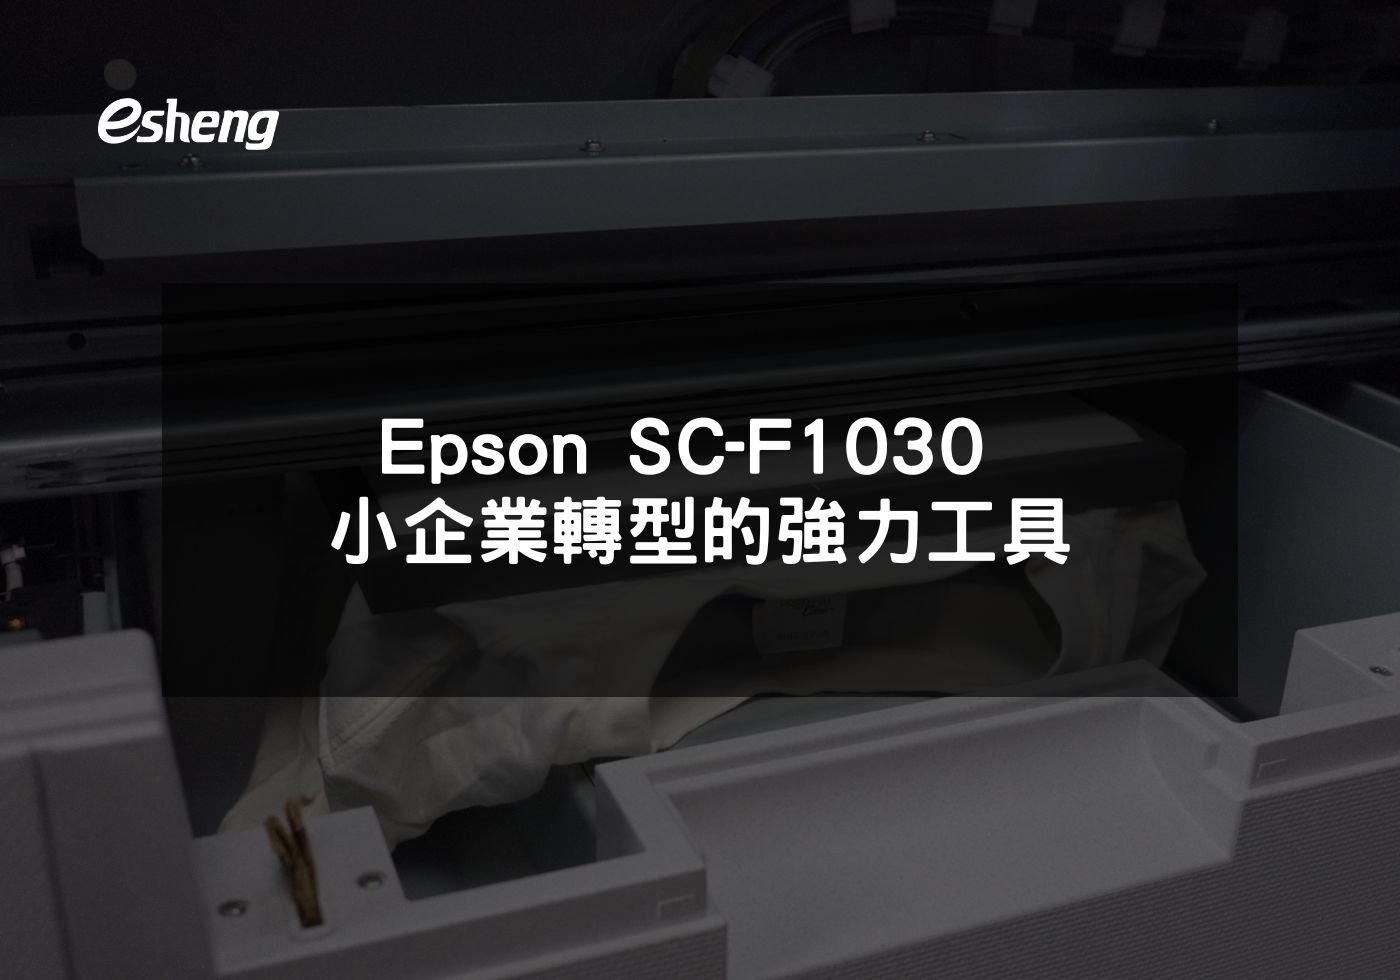 閱讀更多文章 Epson SC-F1030 小企業轉型的強力工具